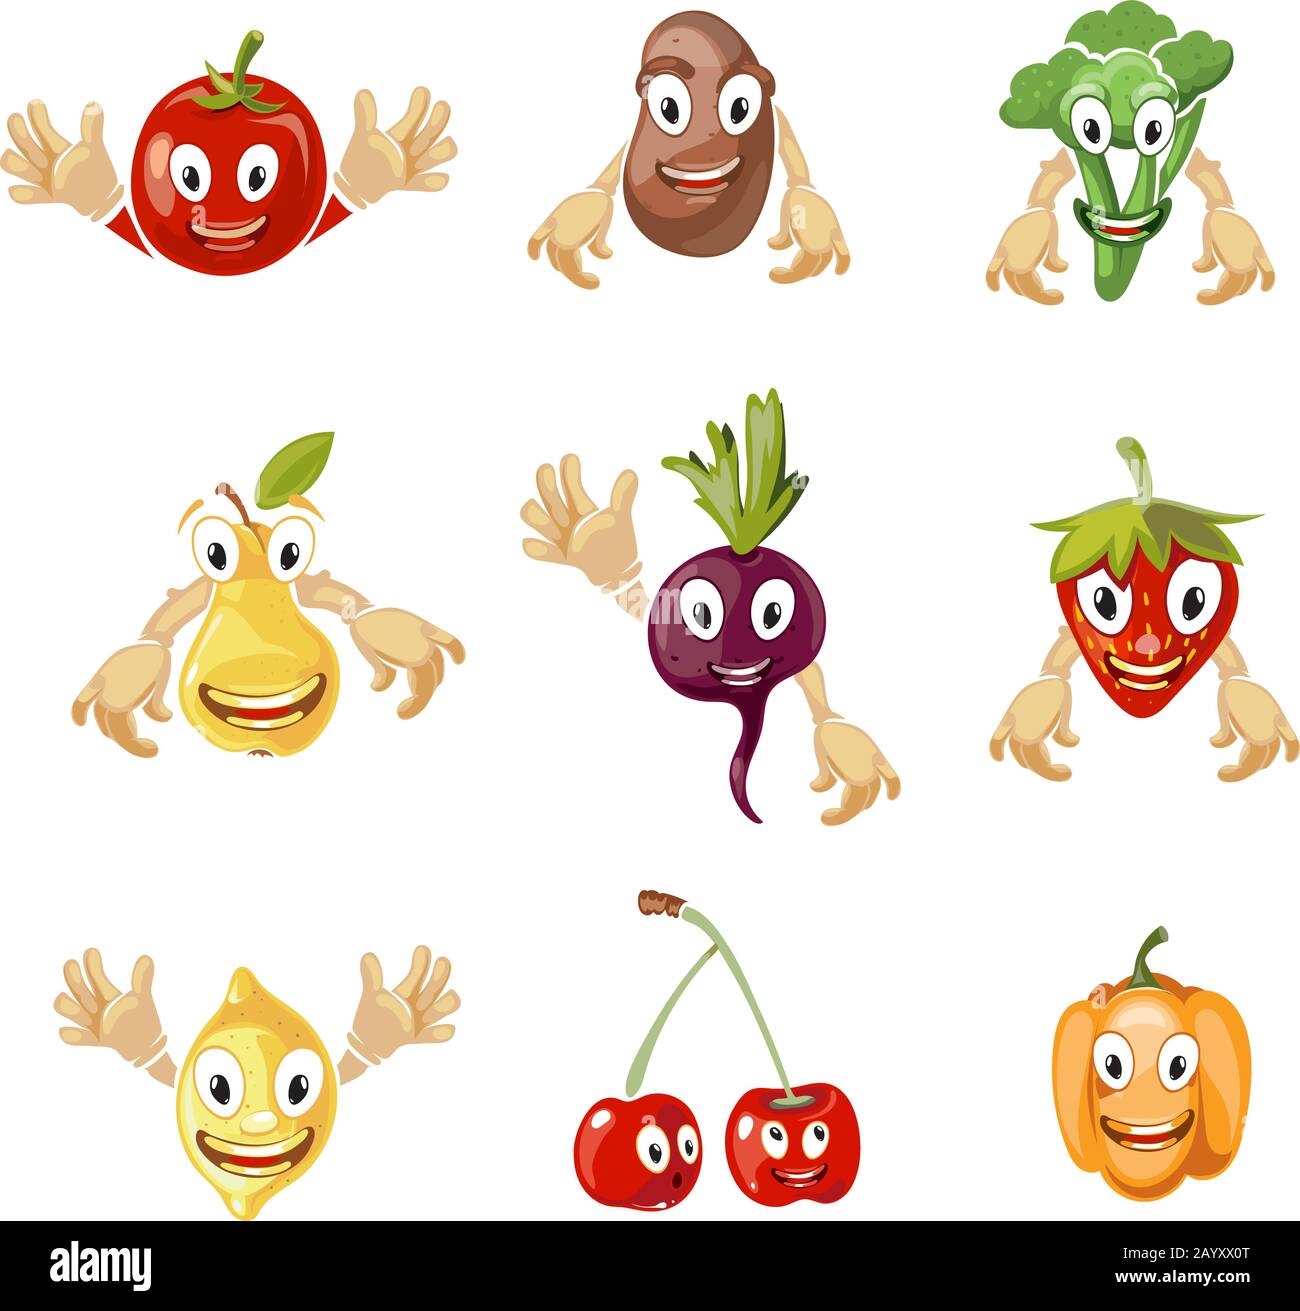 Cute Cartoon verdure e frutta raccolta vettoriale in stile comico.  Personaggi comici di frutta e cartoni animati, frutta dolce e verdura con  illustrazione del volto Immagine e Vettoriale - Alamy